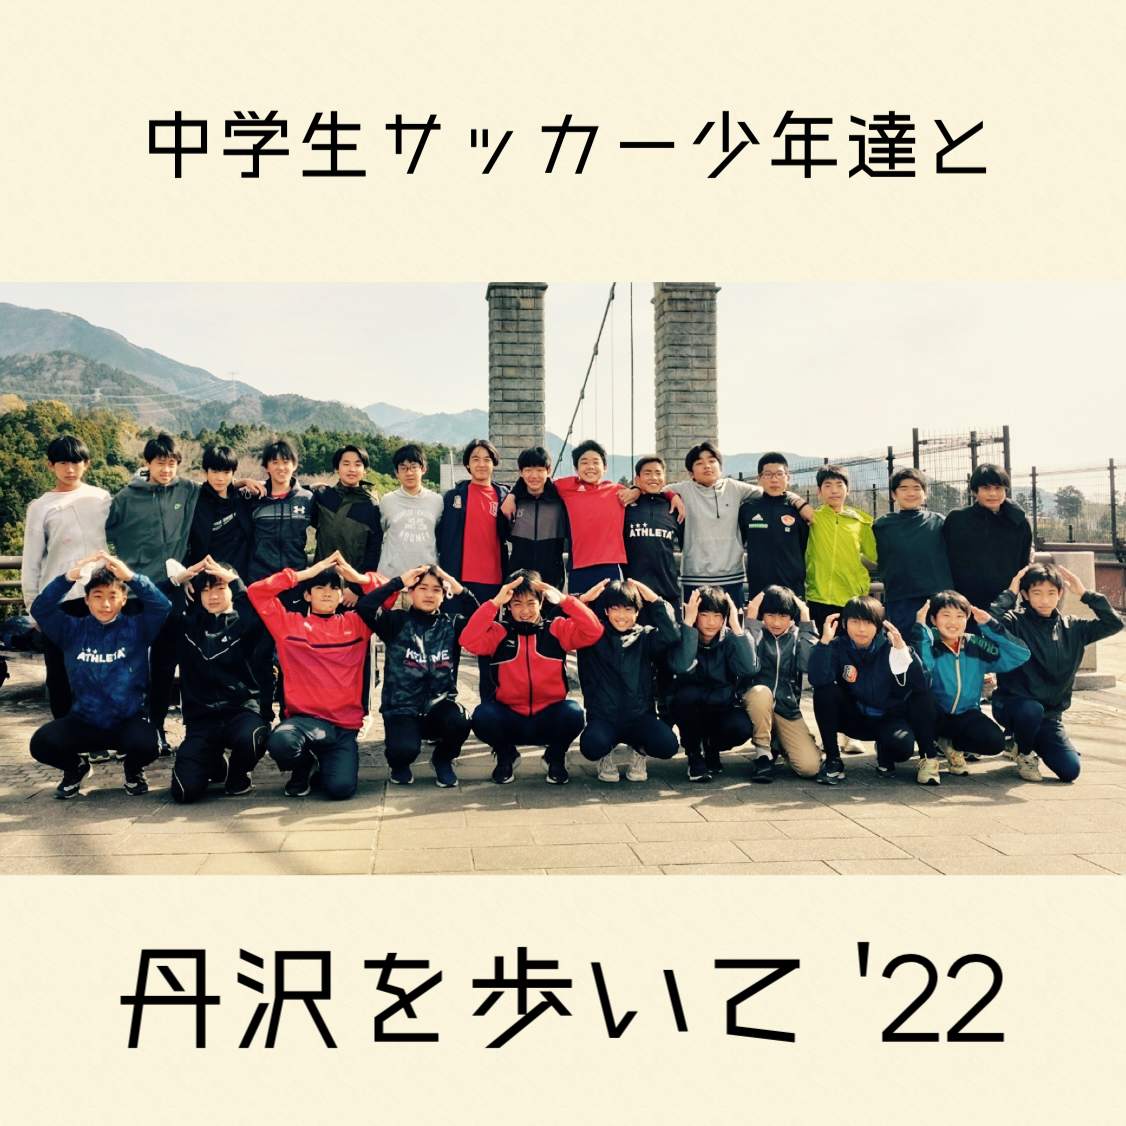 中学生サッカー少年達と丹沢を歩いて '2022